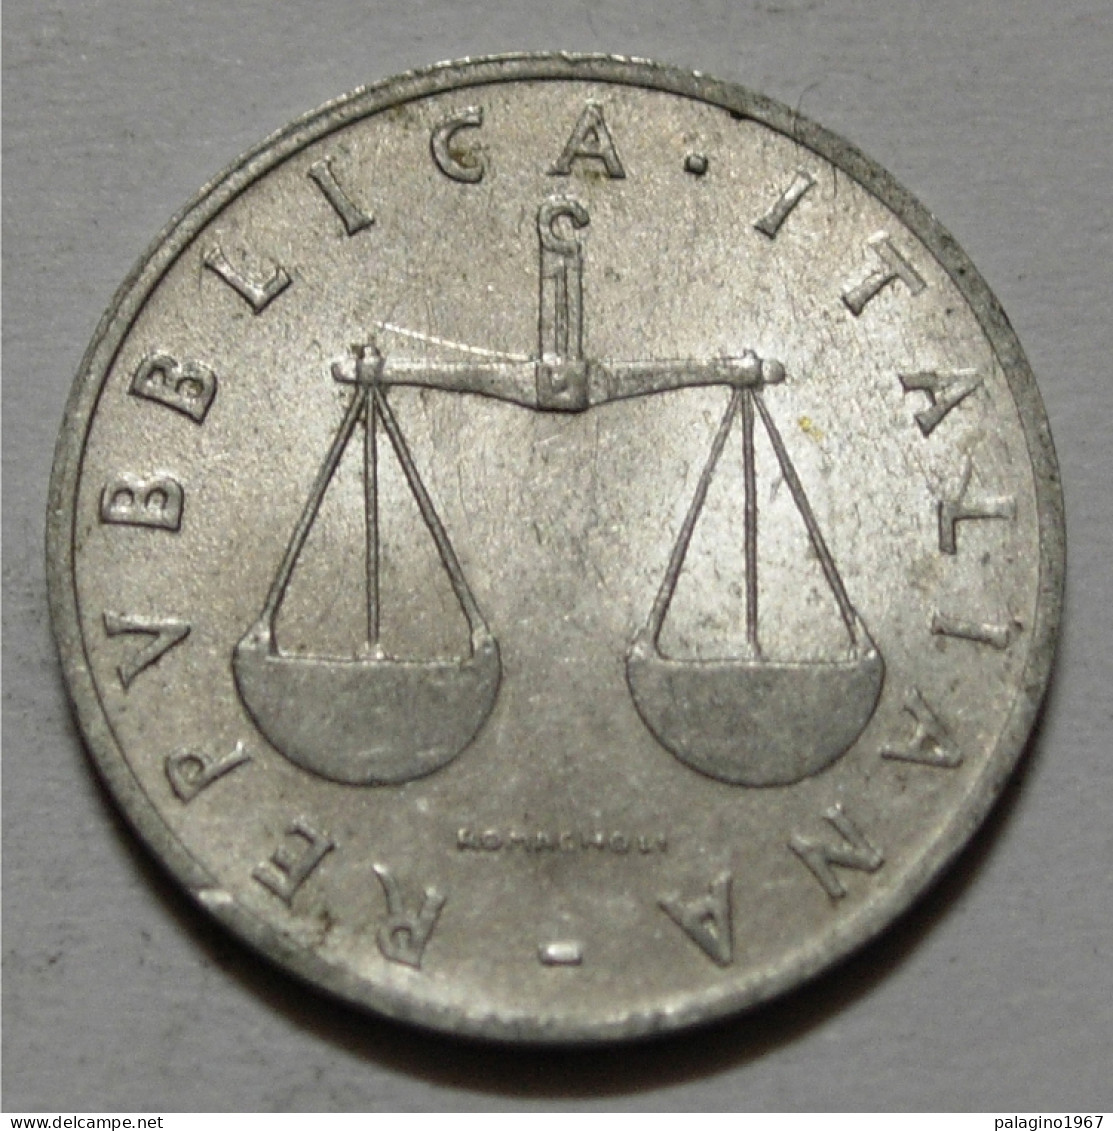 REPUBBLICA ITALIANA 1 Lira Cornucopia 1954 BB  - 1 Lira